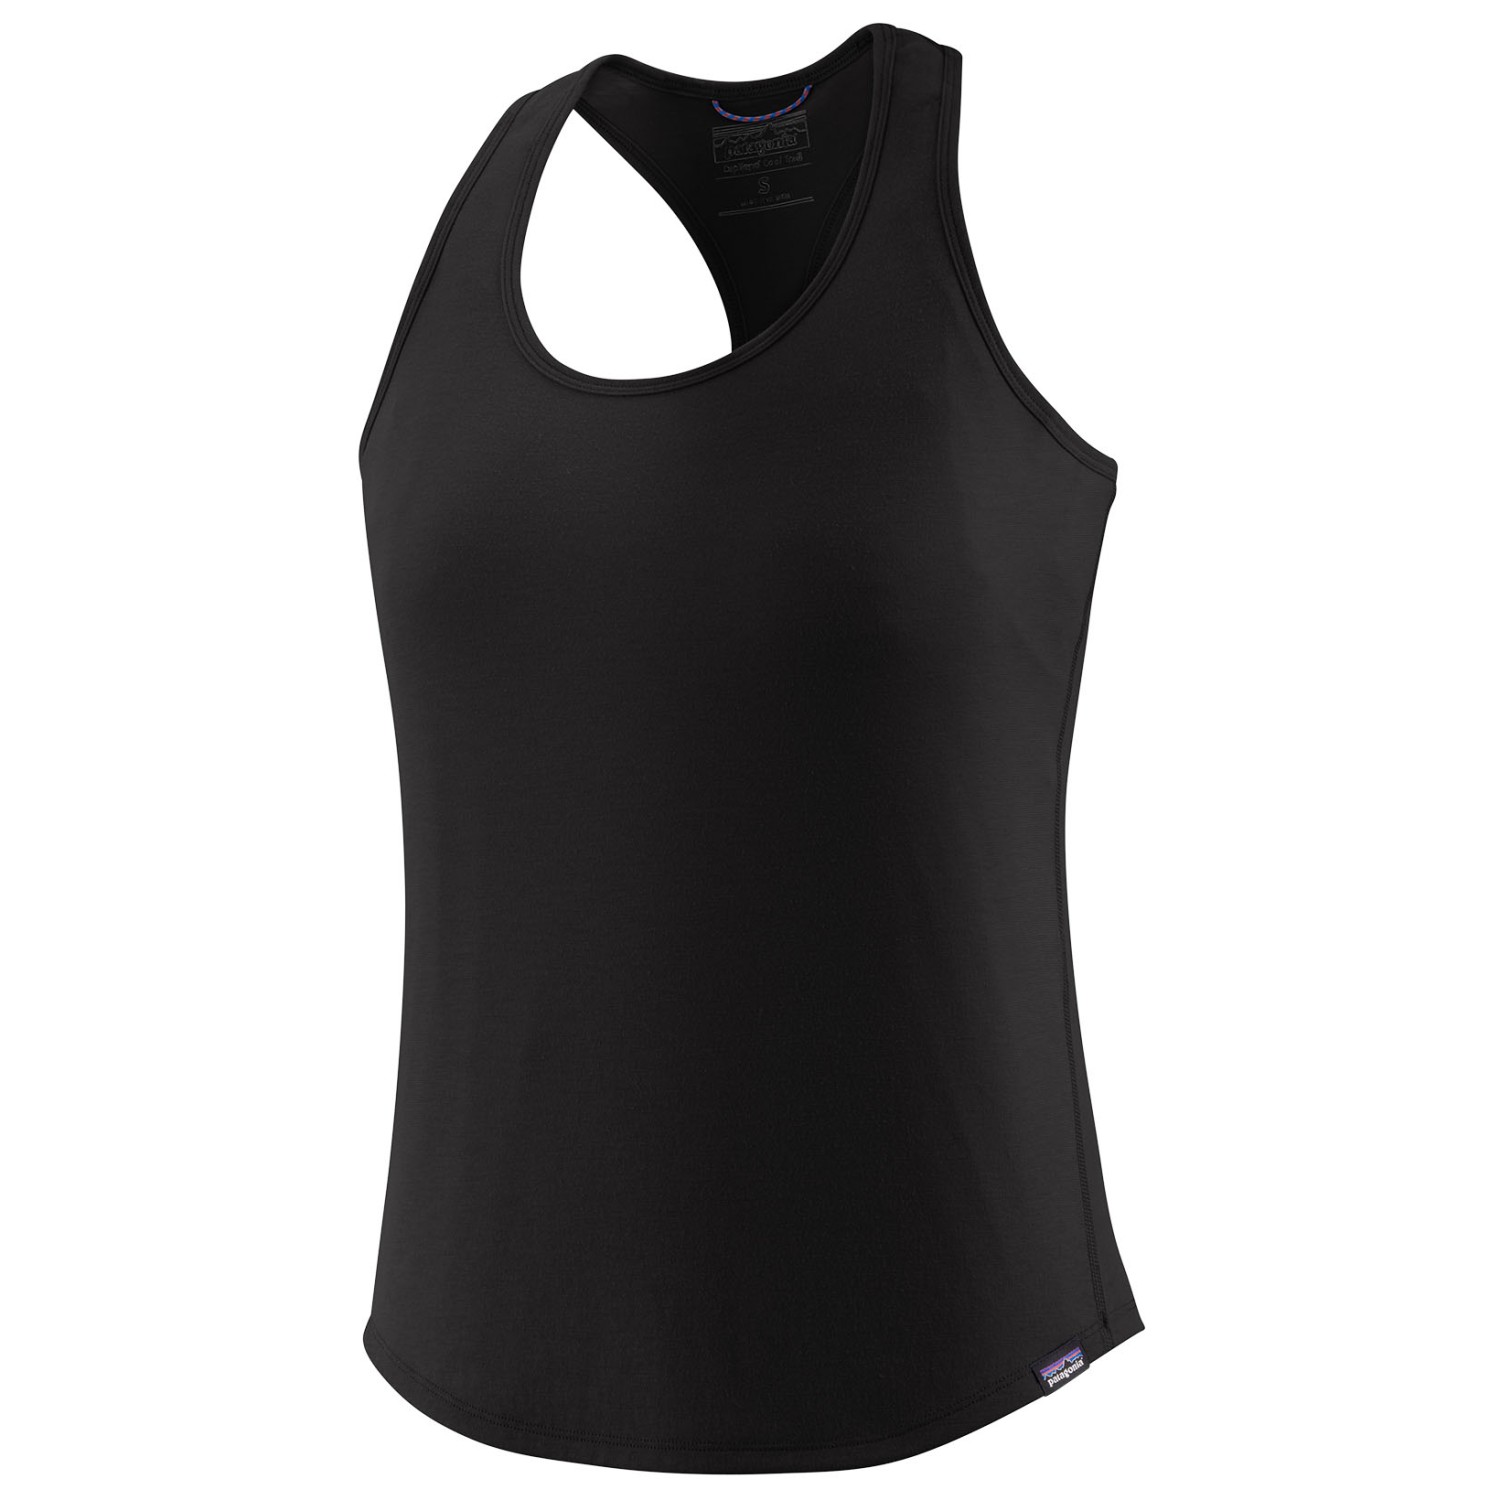 Функциональная рубашка Patagonia Women's Cap Cool Trail Tank, черный цена и фото